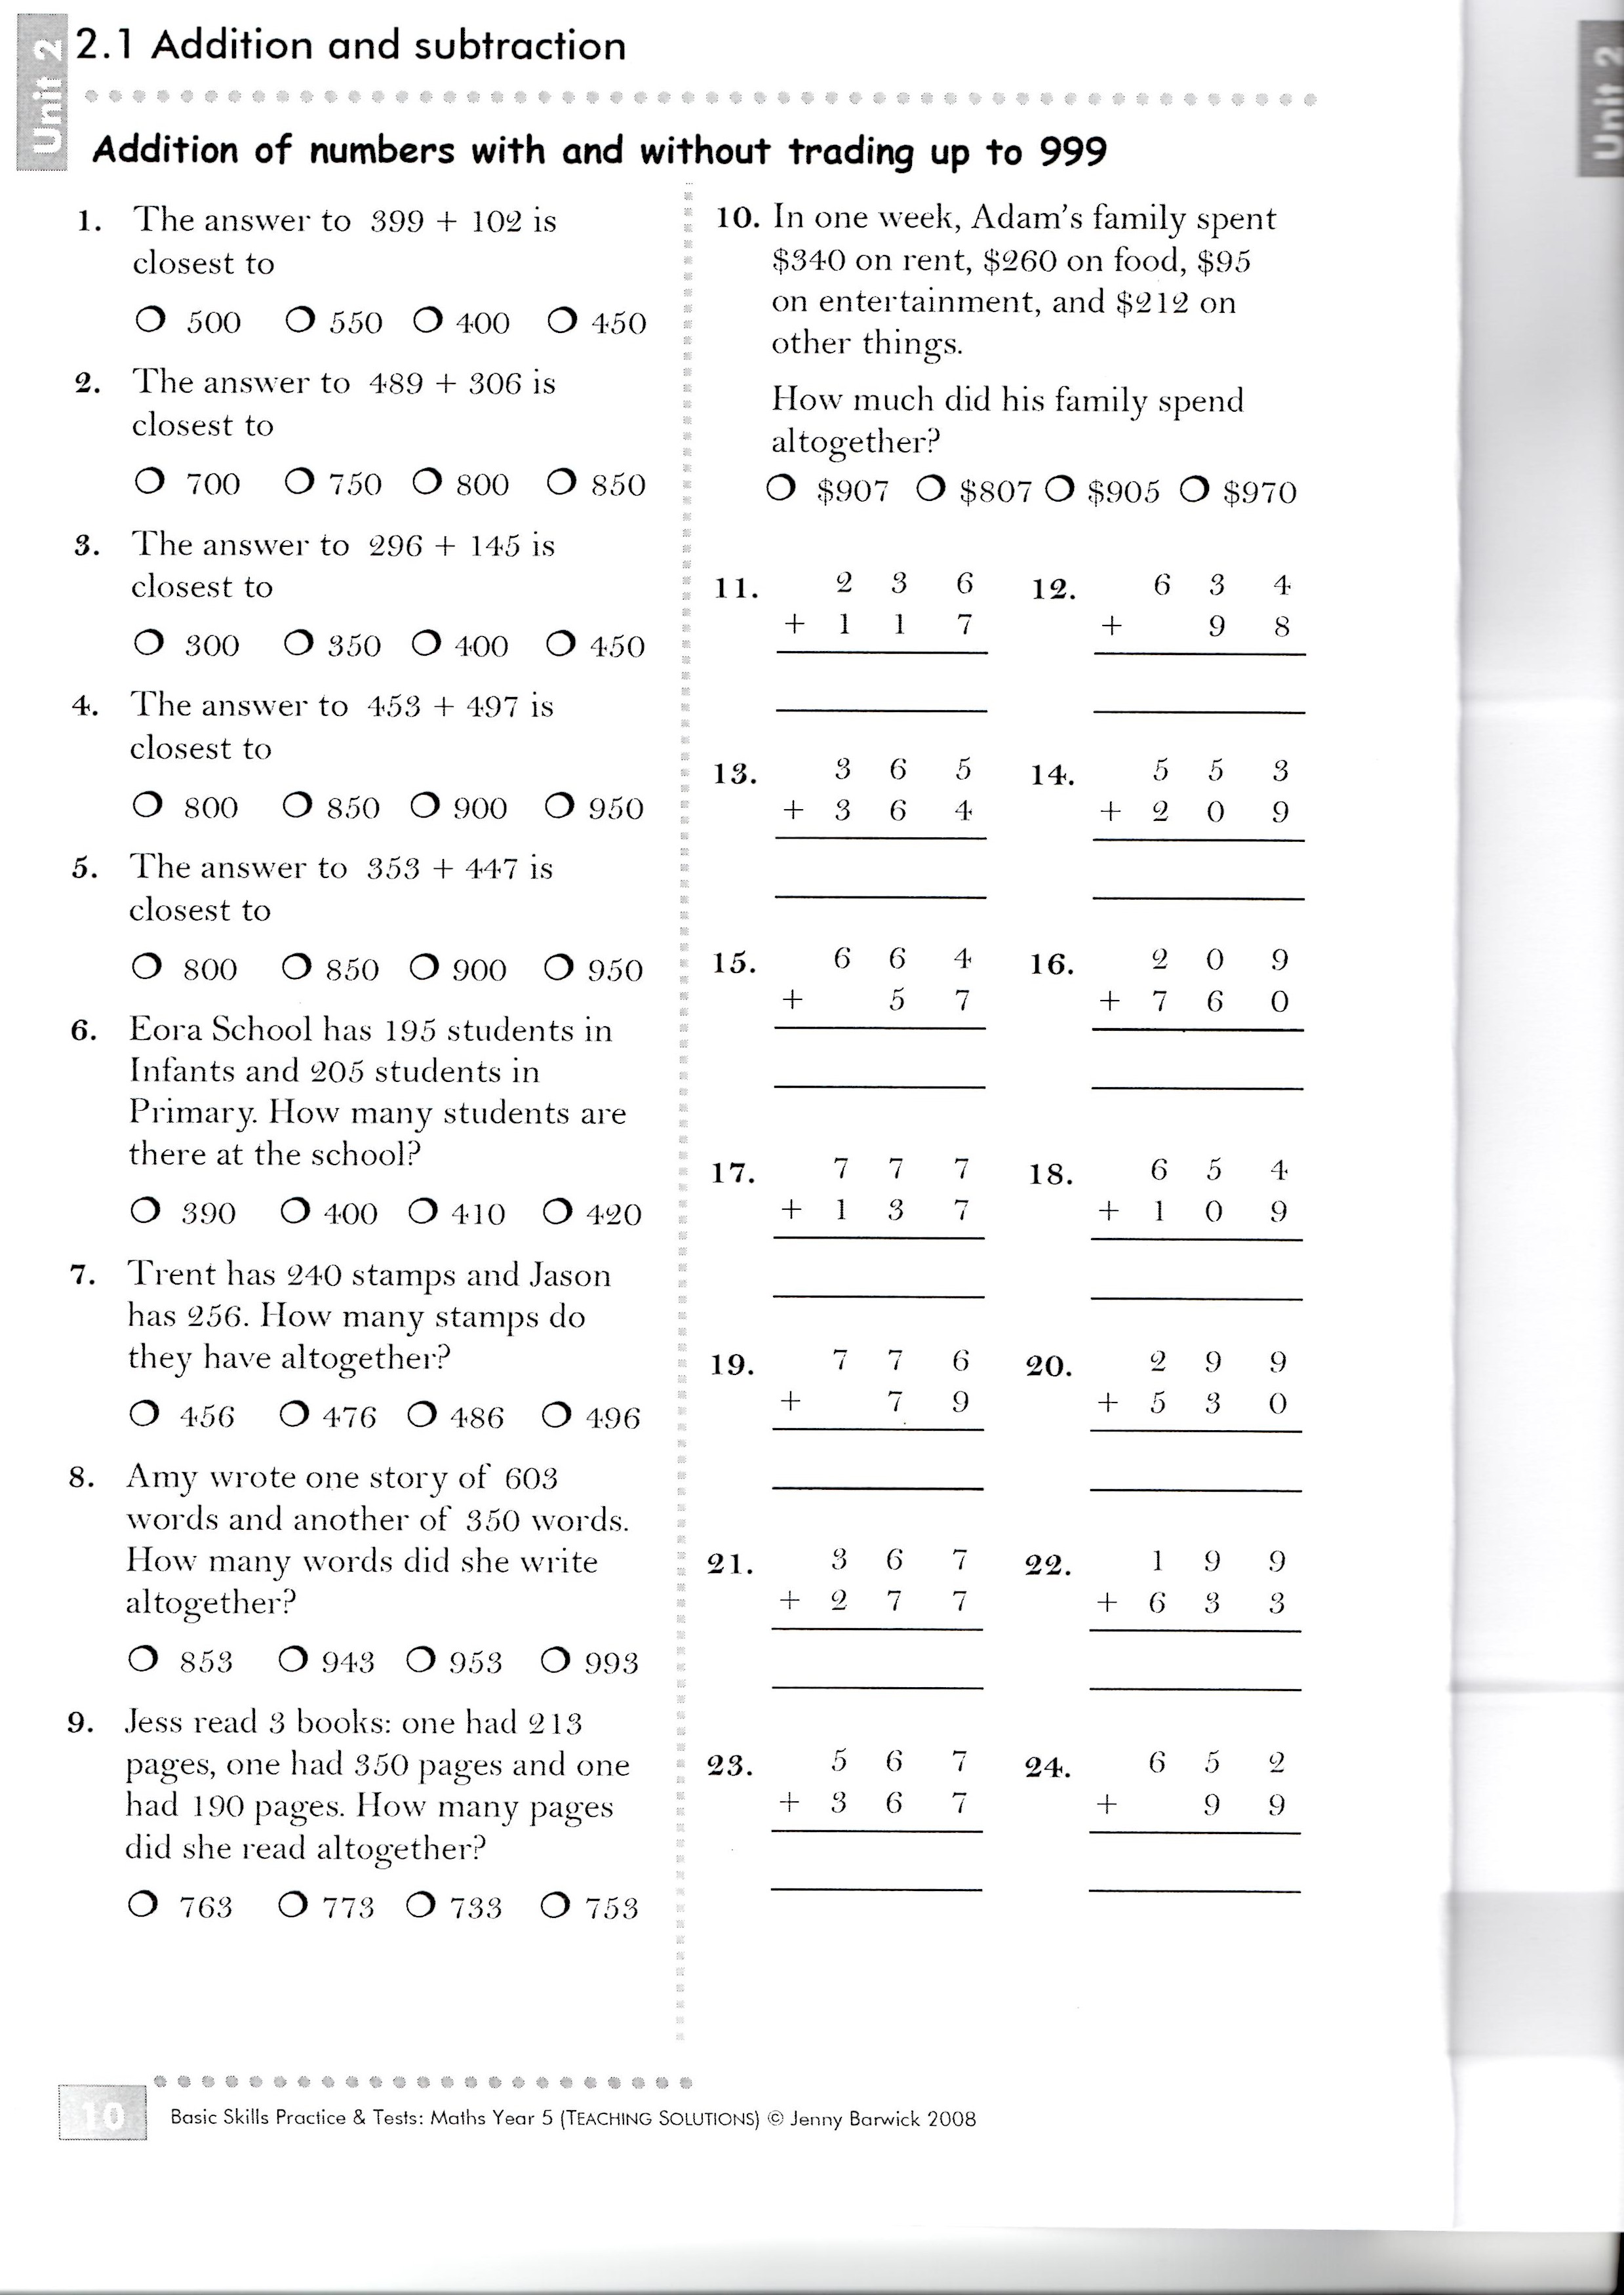 best-basic-math-skills-assessment-printable-harper-blog-28820-hot-sex